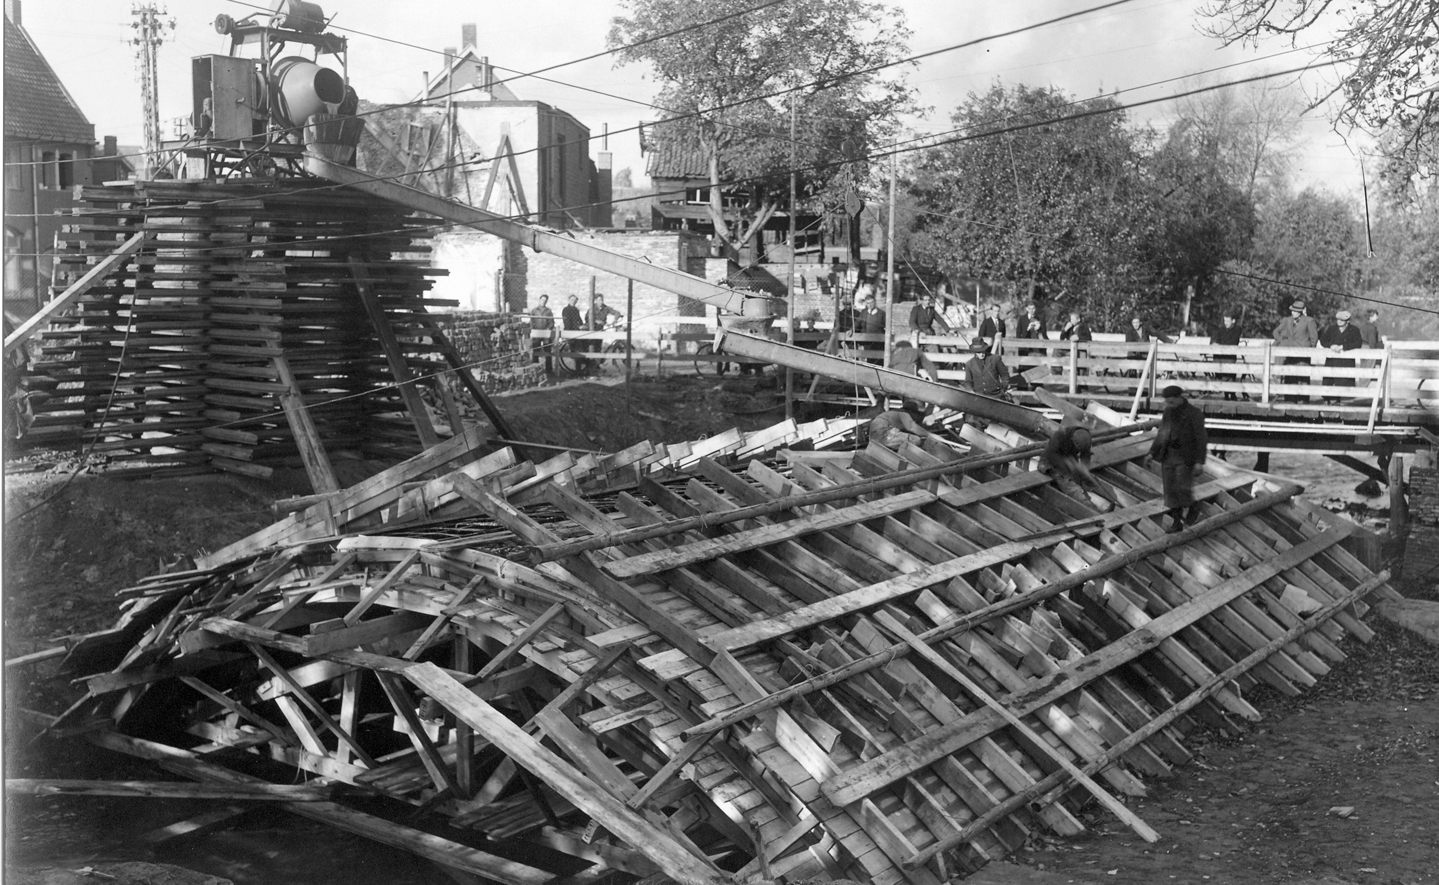 Bouwbedrijf Van Lieshout bouwde de nieuwe Zwaanse Brug. Op de achtergrond de noodbrug die werd aangelegd nadat de Dommeloverspanning door de Duitse bezetters op de laatste oorlogsdag, 24 oktober 1944, was opgeblazen. Het komt ongetwijfeld voorbij tijdens de rondleiding op dinsdag 16 augustus.